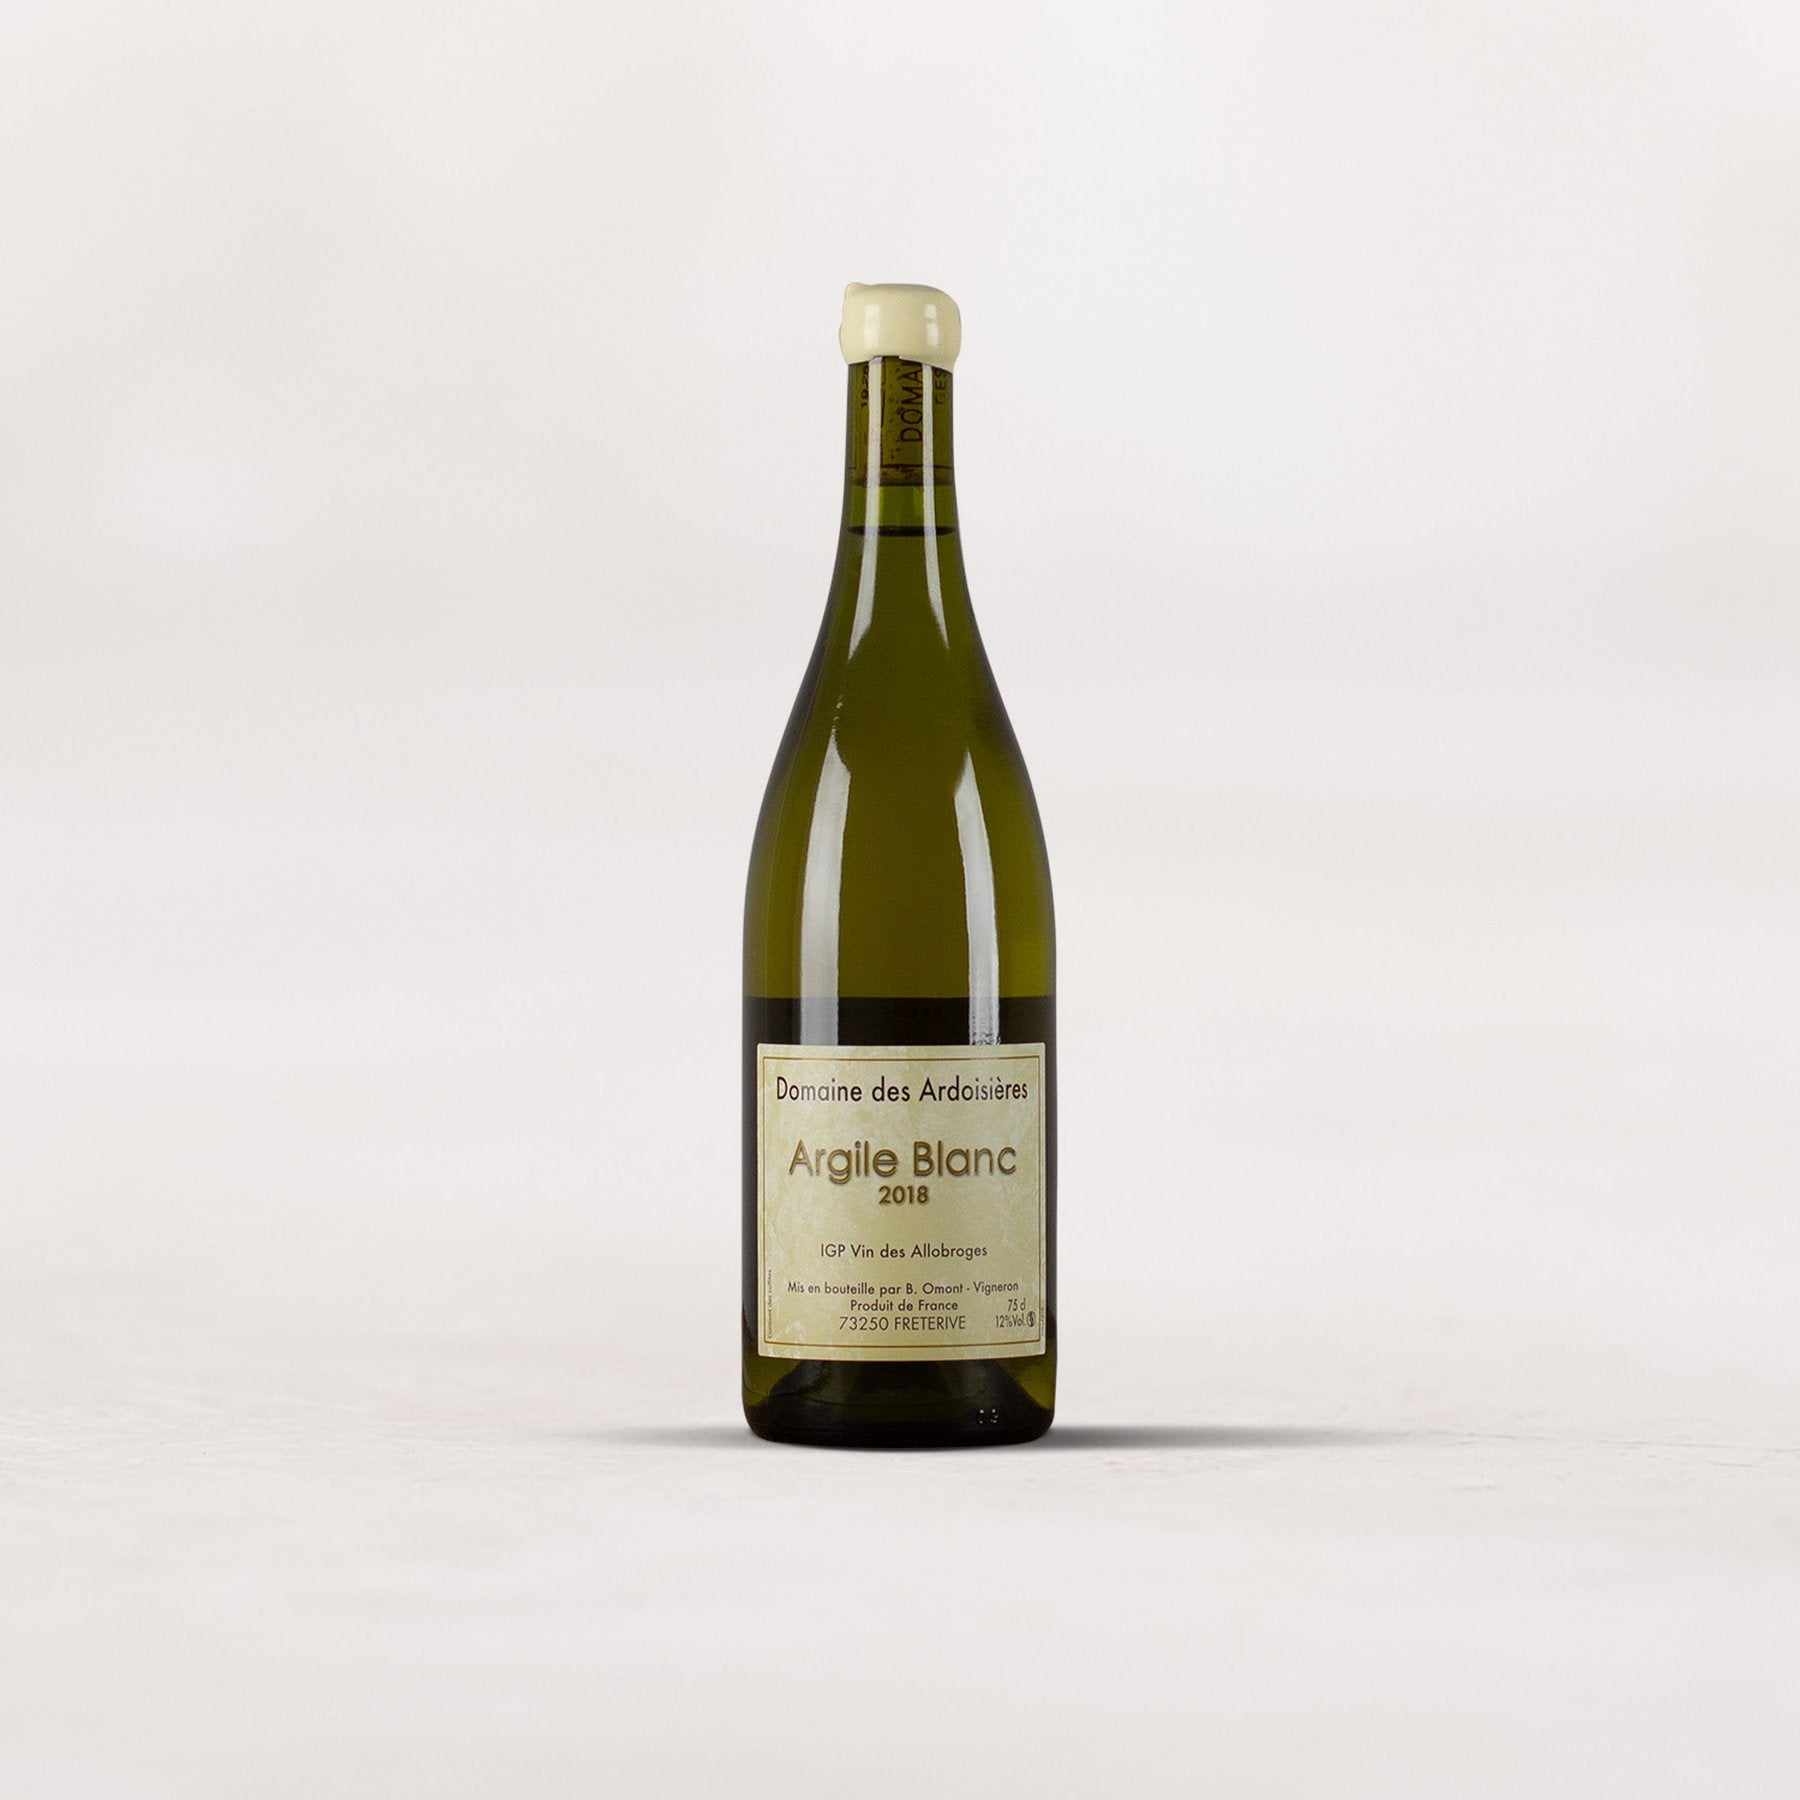 Domaine des Ardoisières, IGP Vin des Allobroges, Argile Blanc